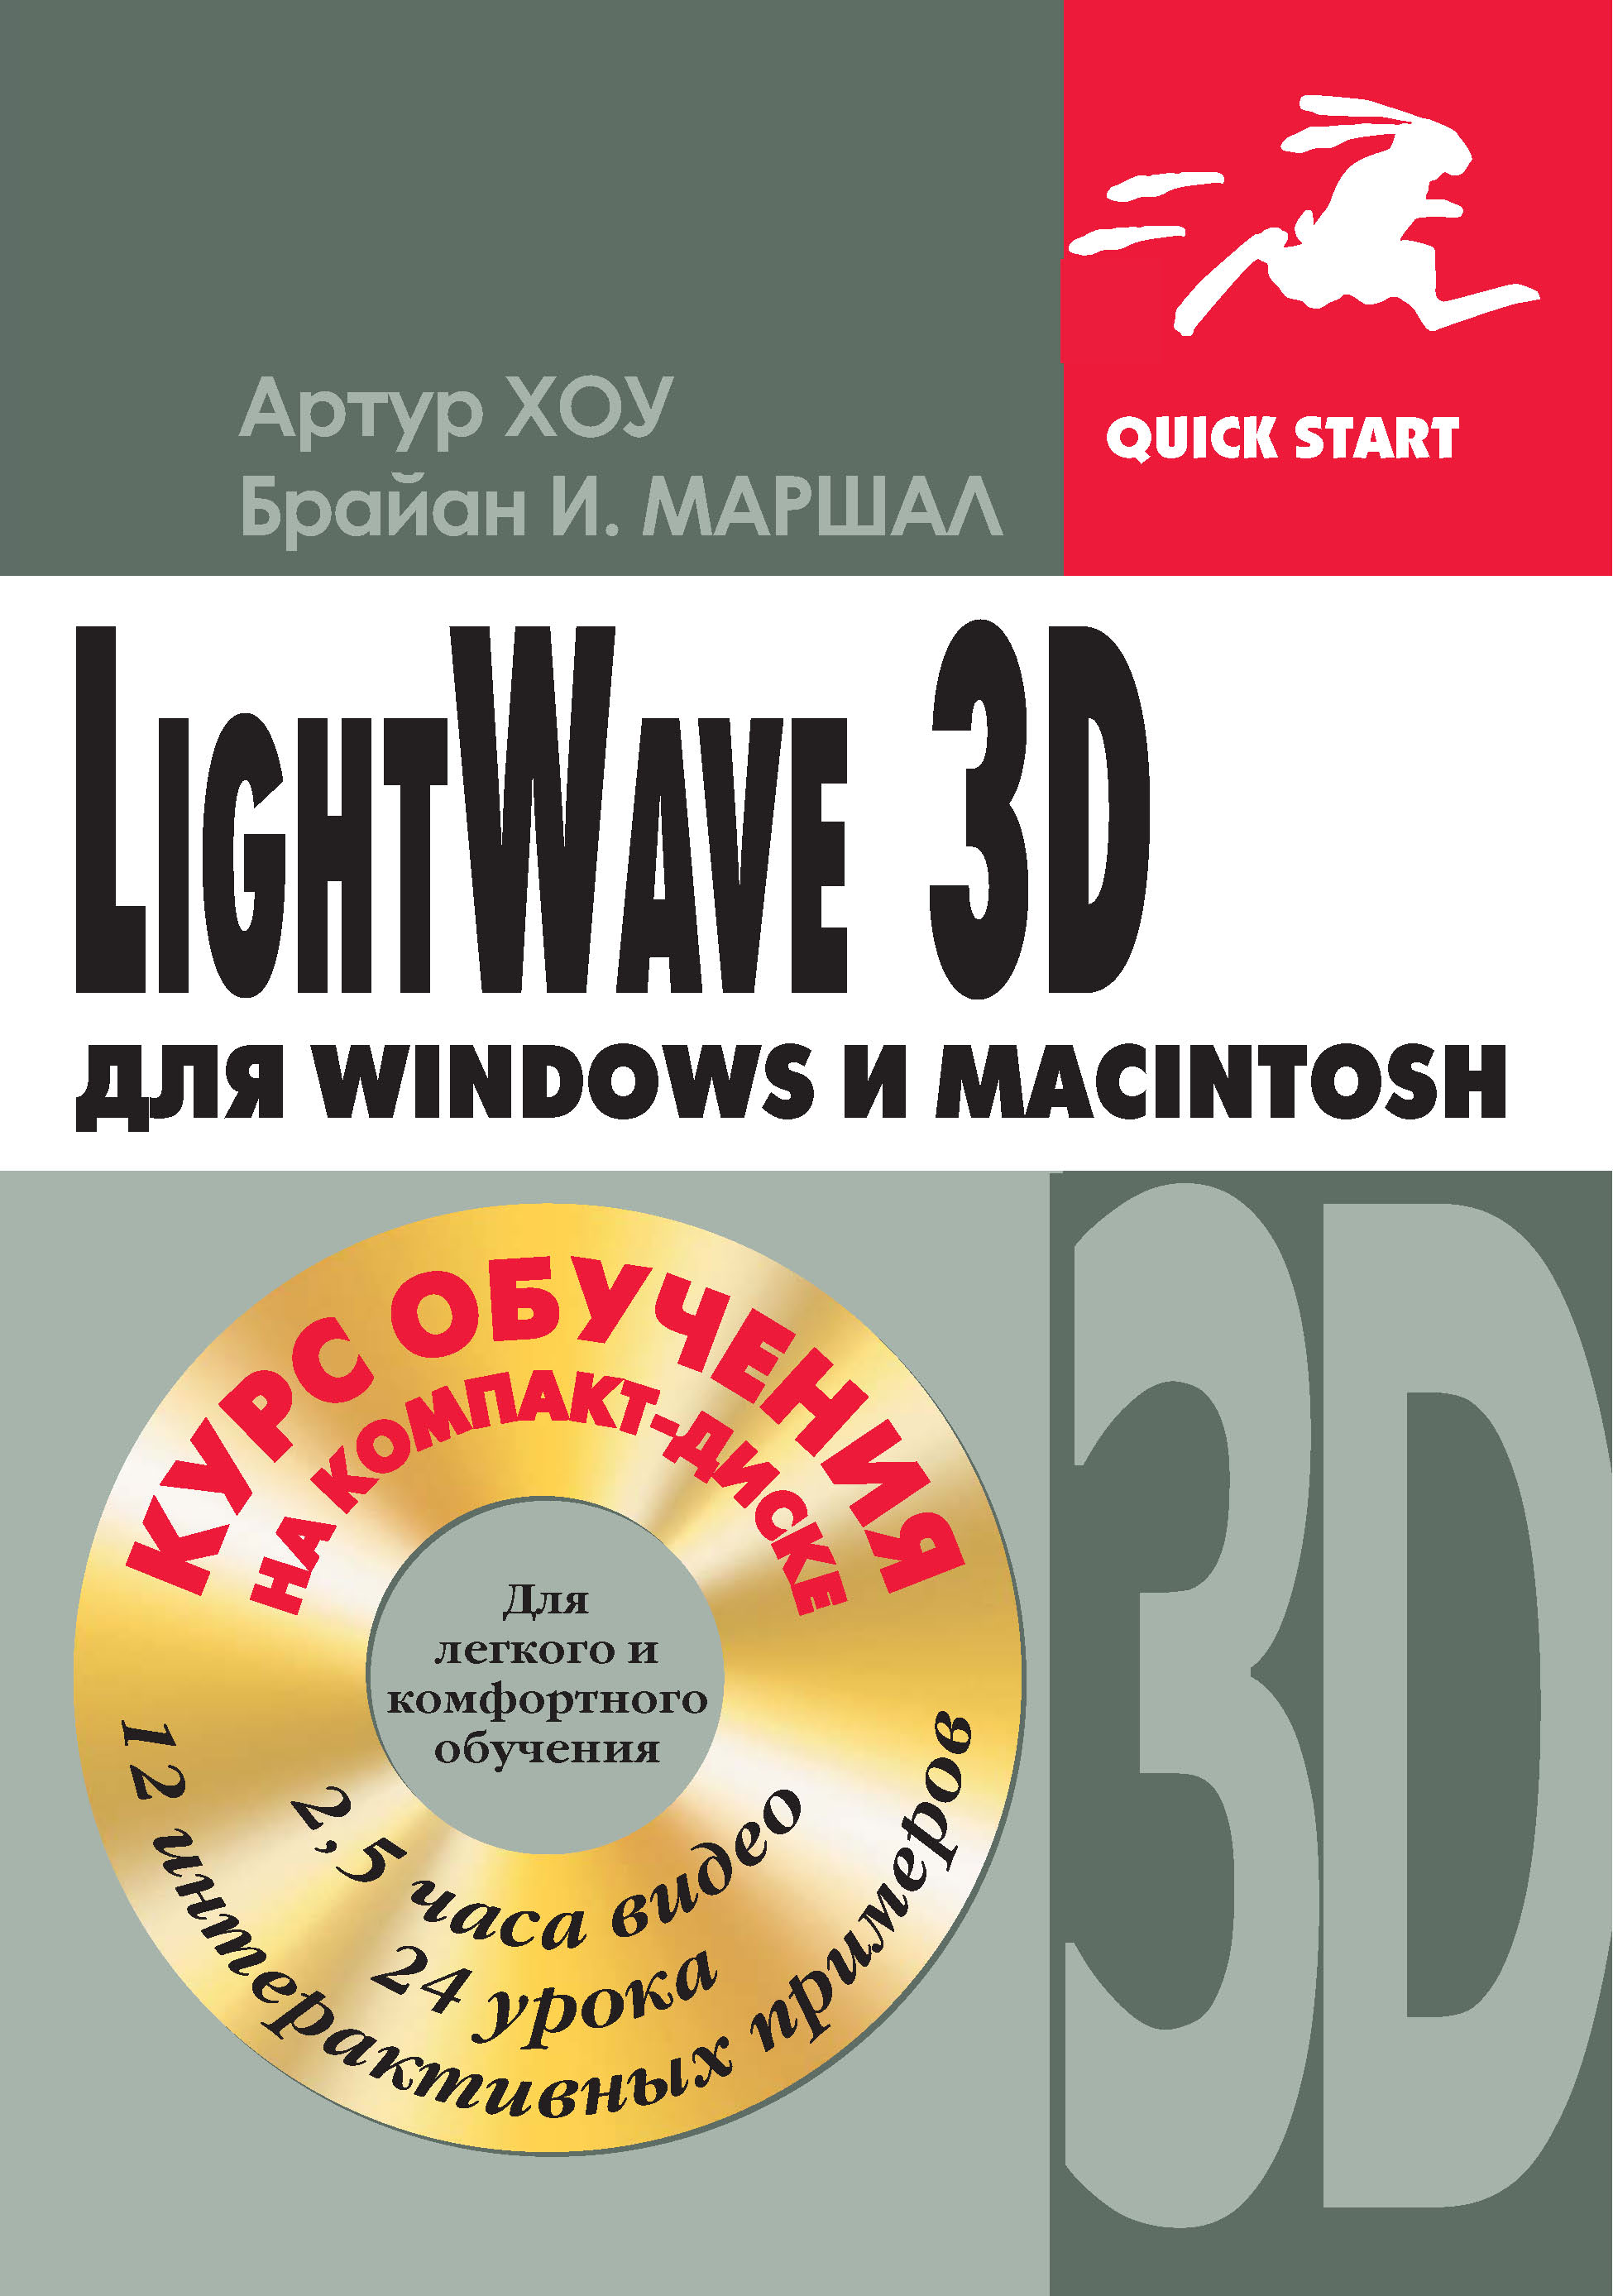 Книга Quick start LightWave 3D для Windows и Мacintosh созданная Артур Хоу, Брайан И. Маршалл может относится к жанру зарубежная компьютерная литература, зарубежная справочная литература, программы, руководства. Стоимость электронной книги LightWave 3D для Windows и Мacintosh с идентификатором 22784558 составляет 319.00 руб.